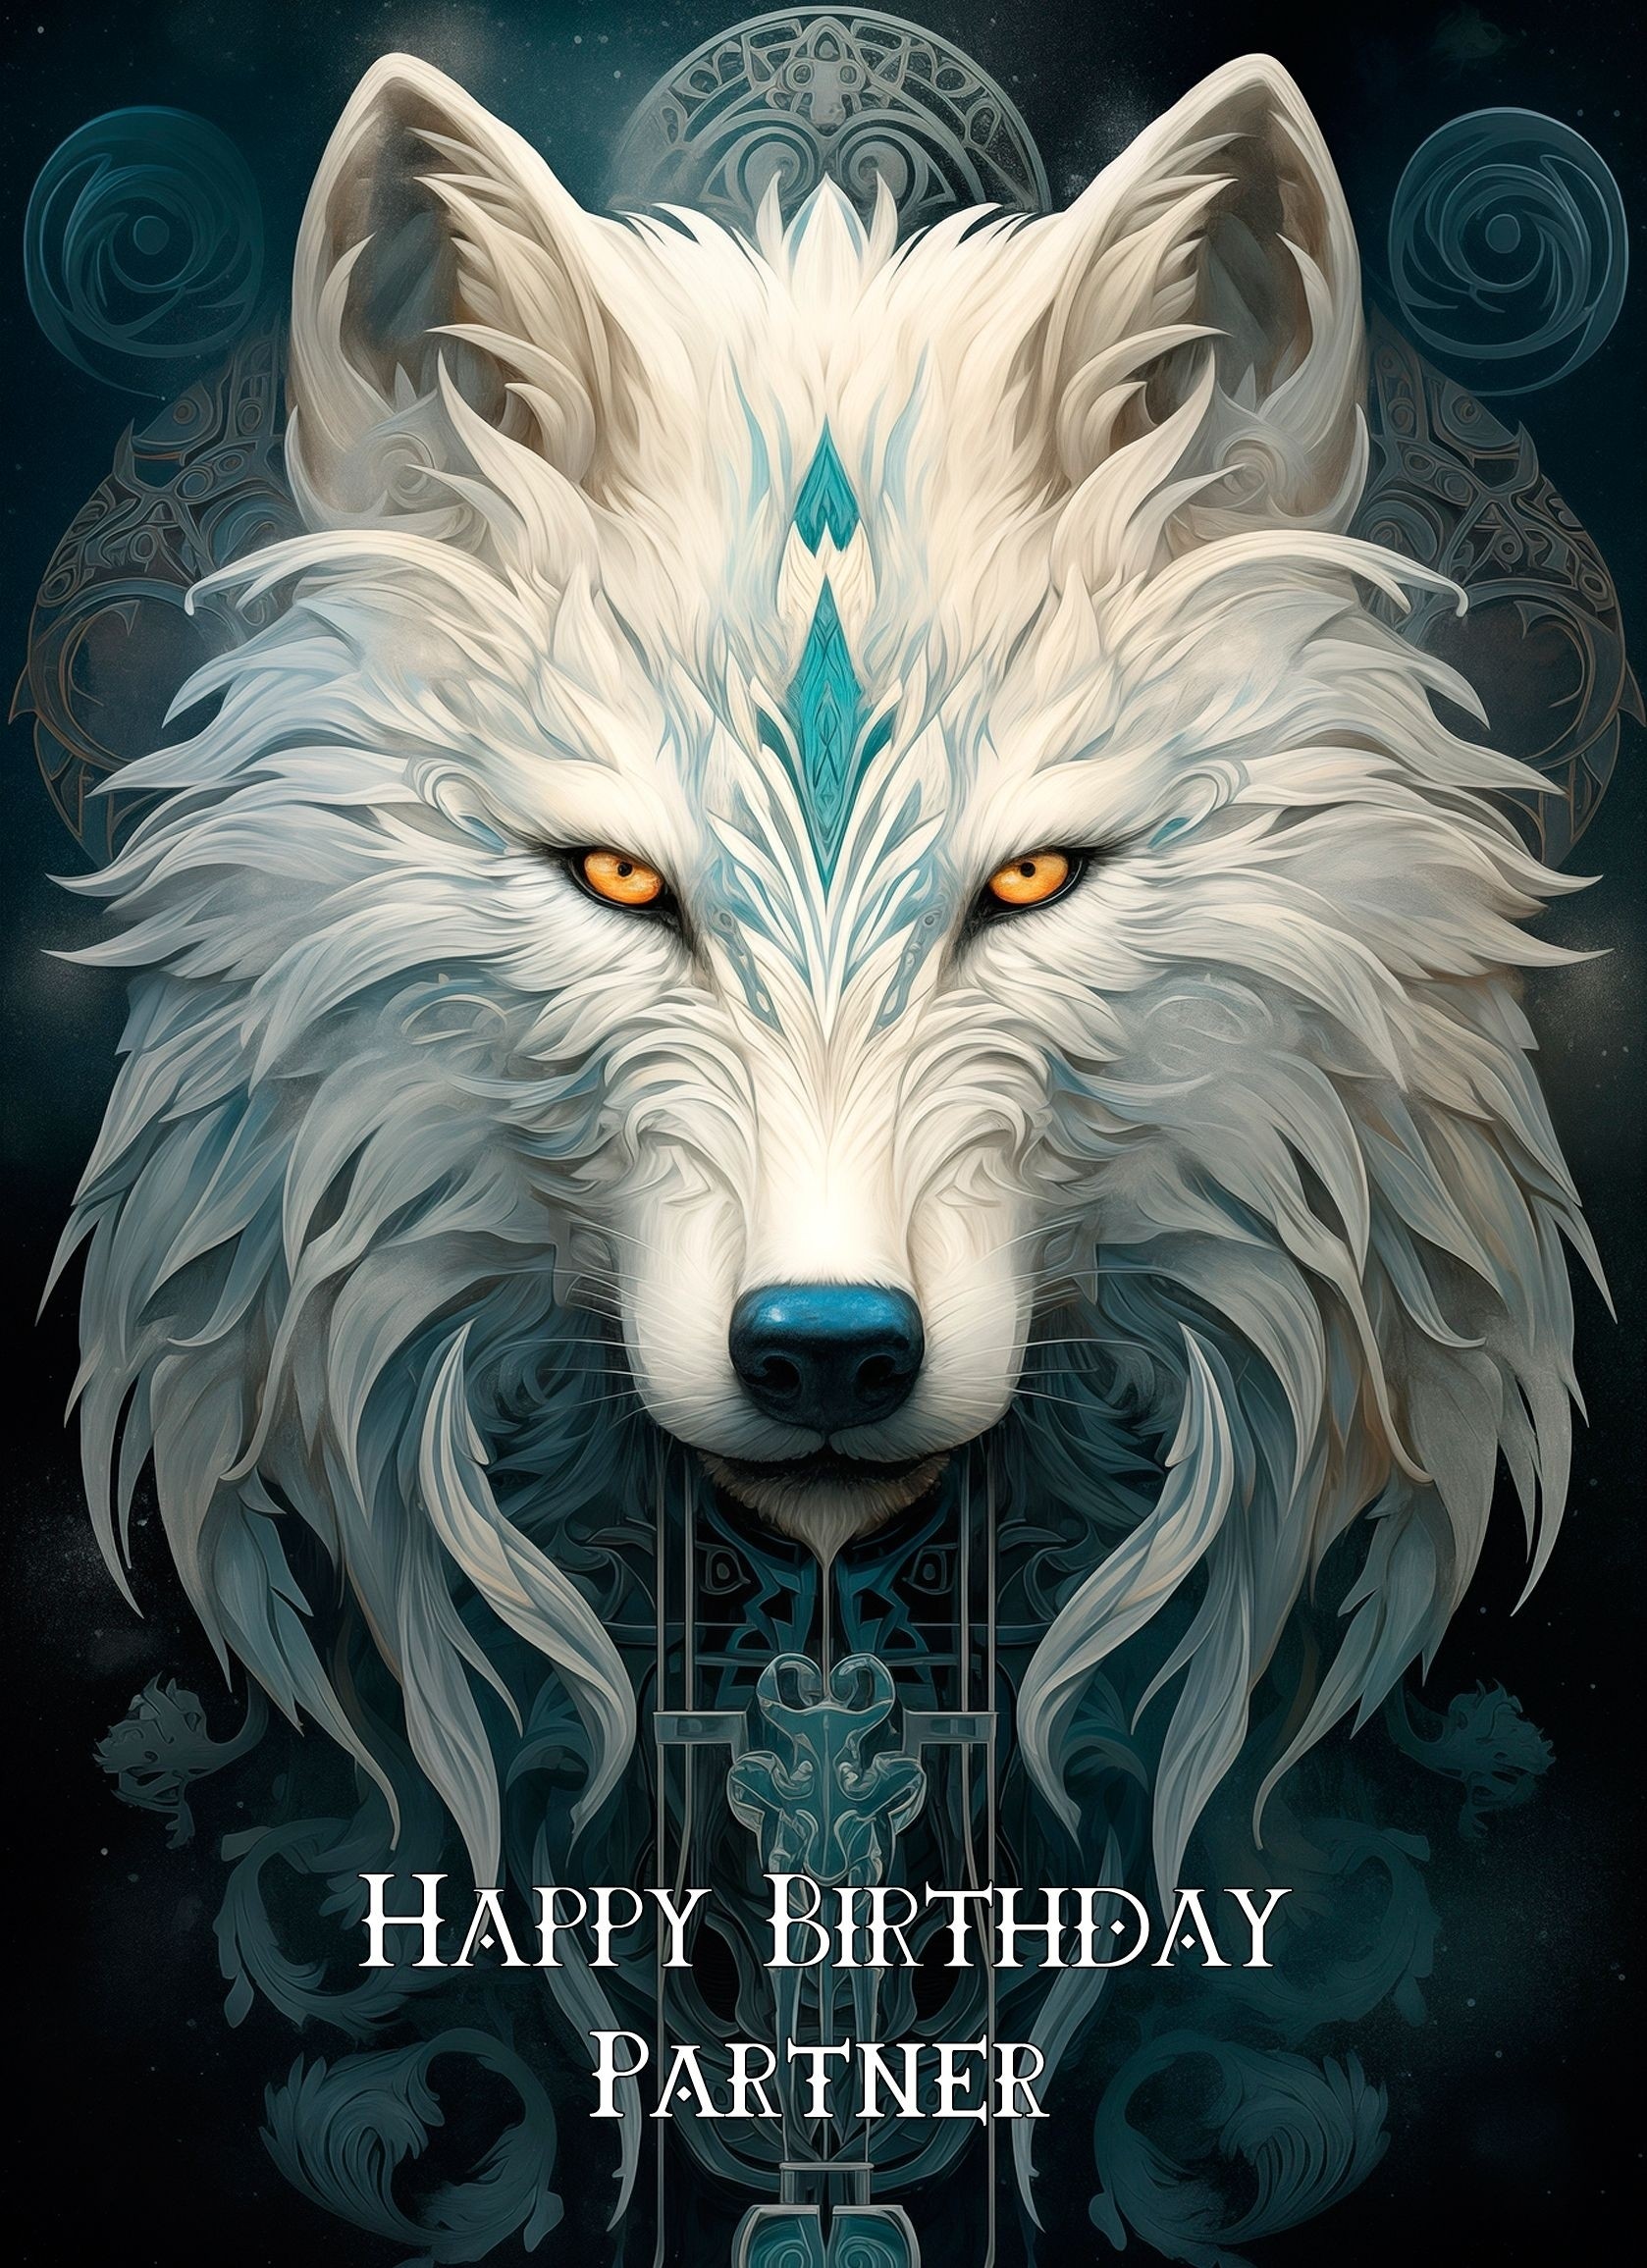 Tribal Wolf Art Birthday Card For Partner (Design 1)